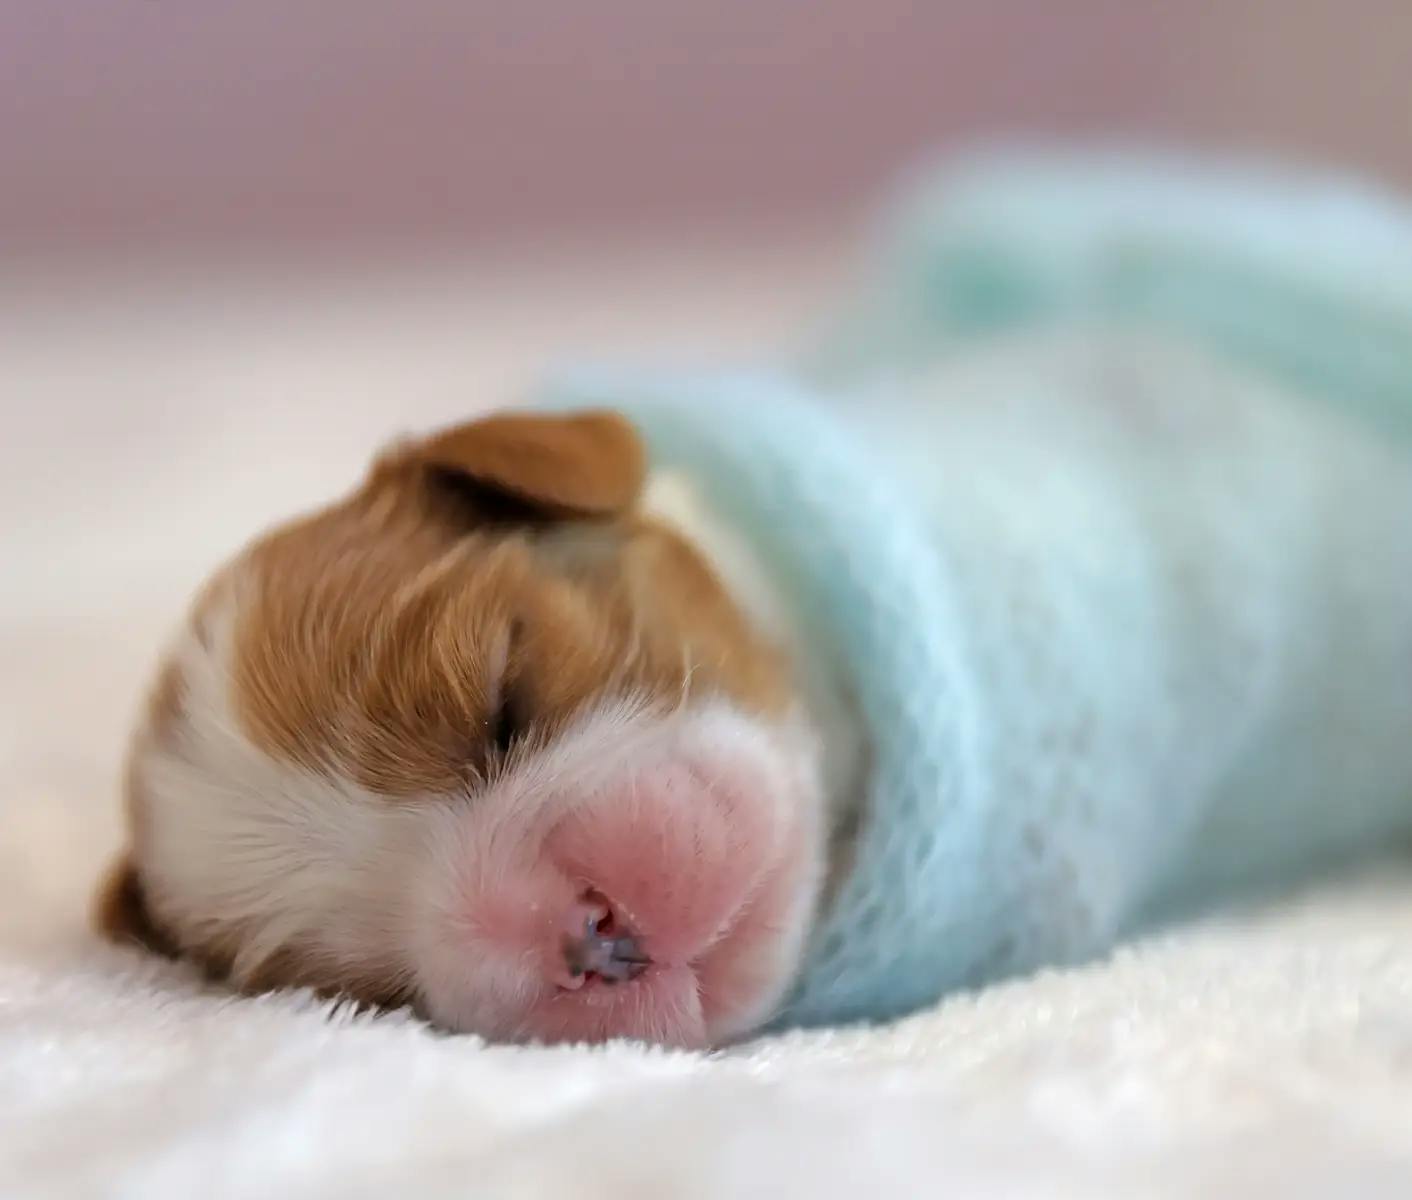 newborn puppy in a blue blanket